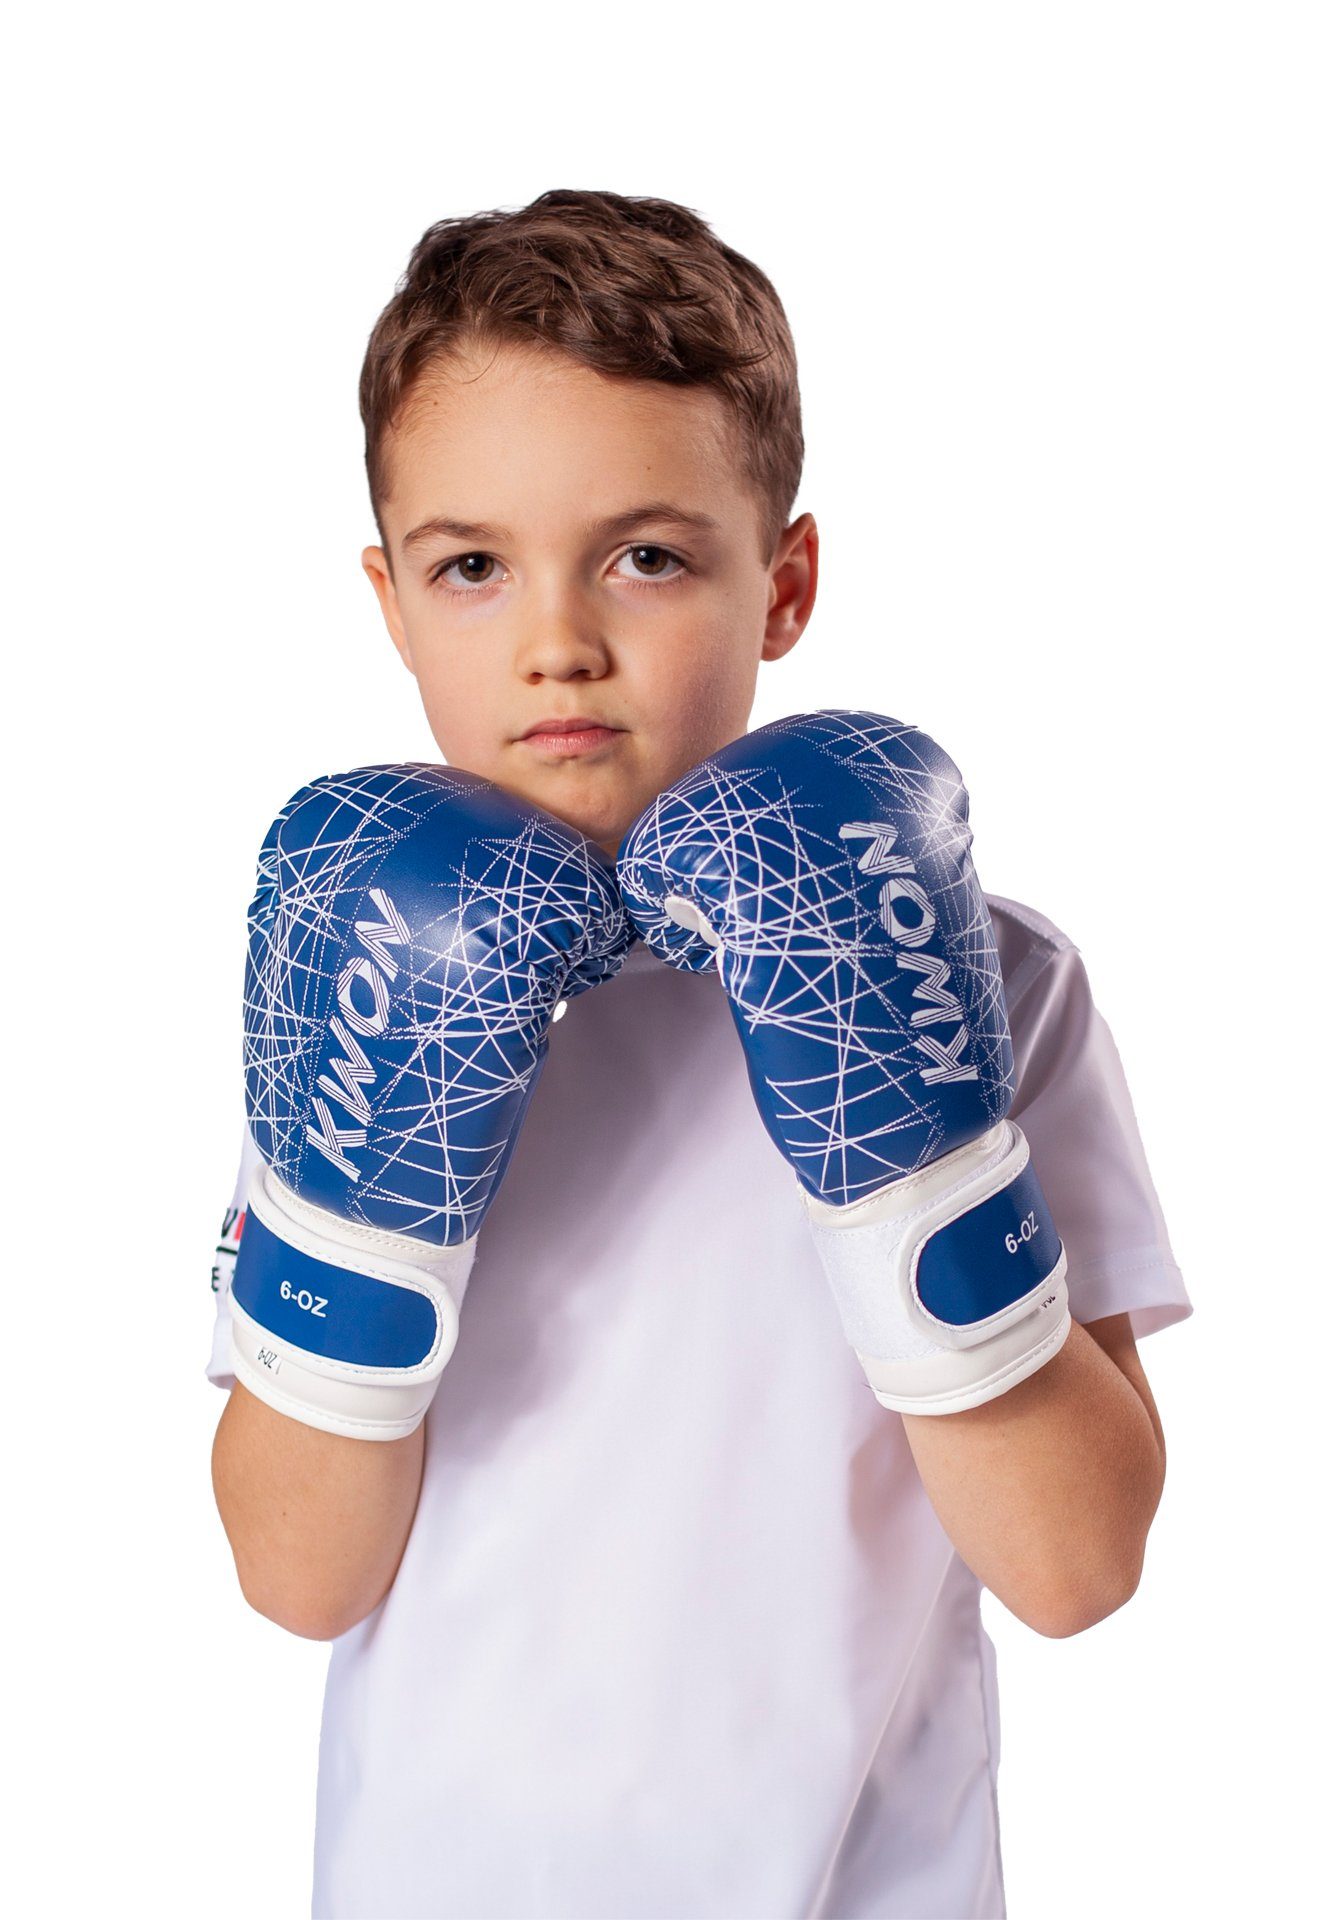 KWON Boxhandschuhe Kinder pink blau 6 Kickboxen Box-Handschuhe Kinderboxhandschuhe), MMA Boxen Unzen, neon Qualität klein, hochwertige Kids (small